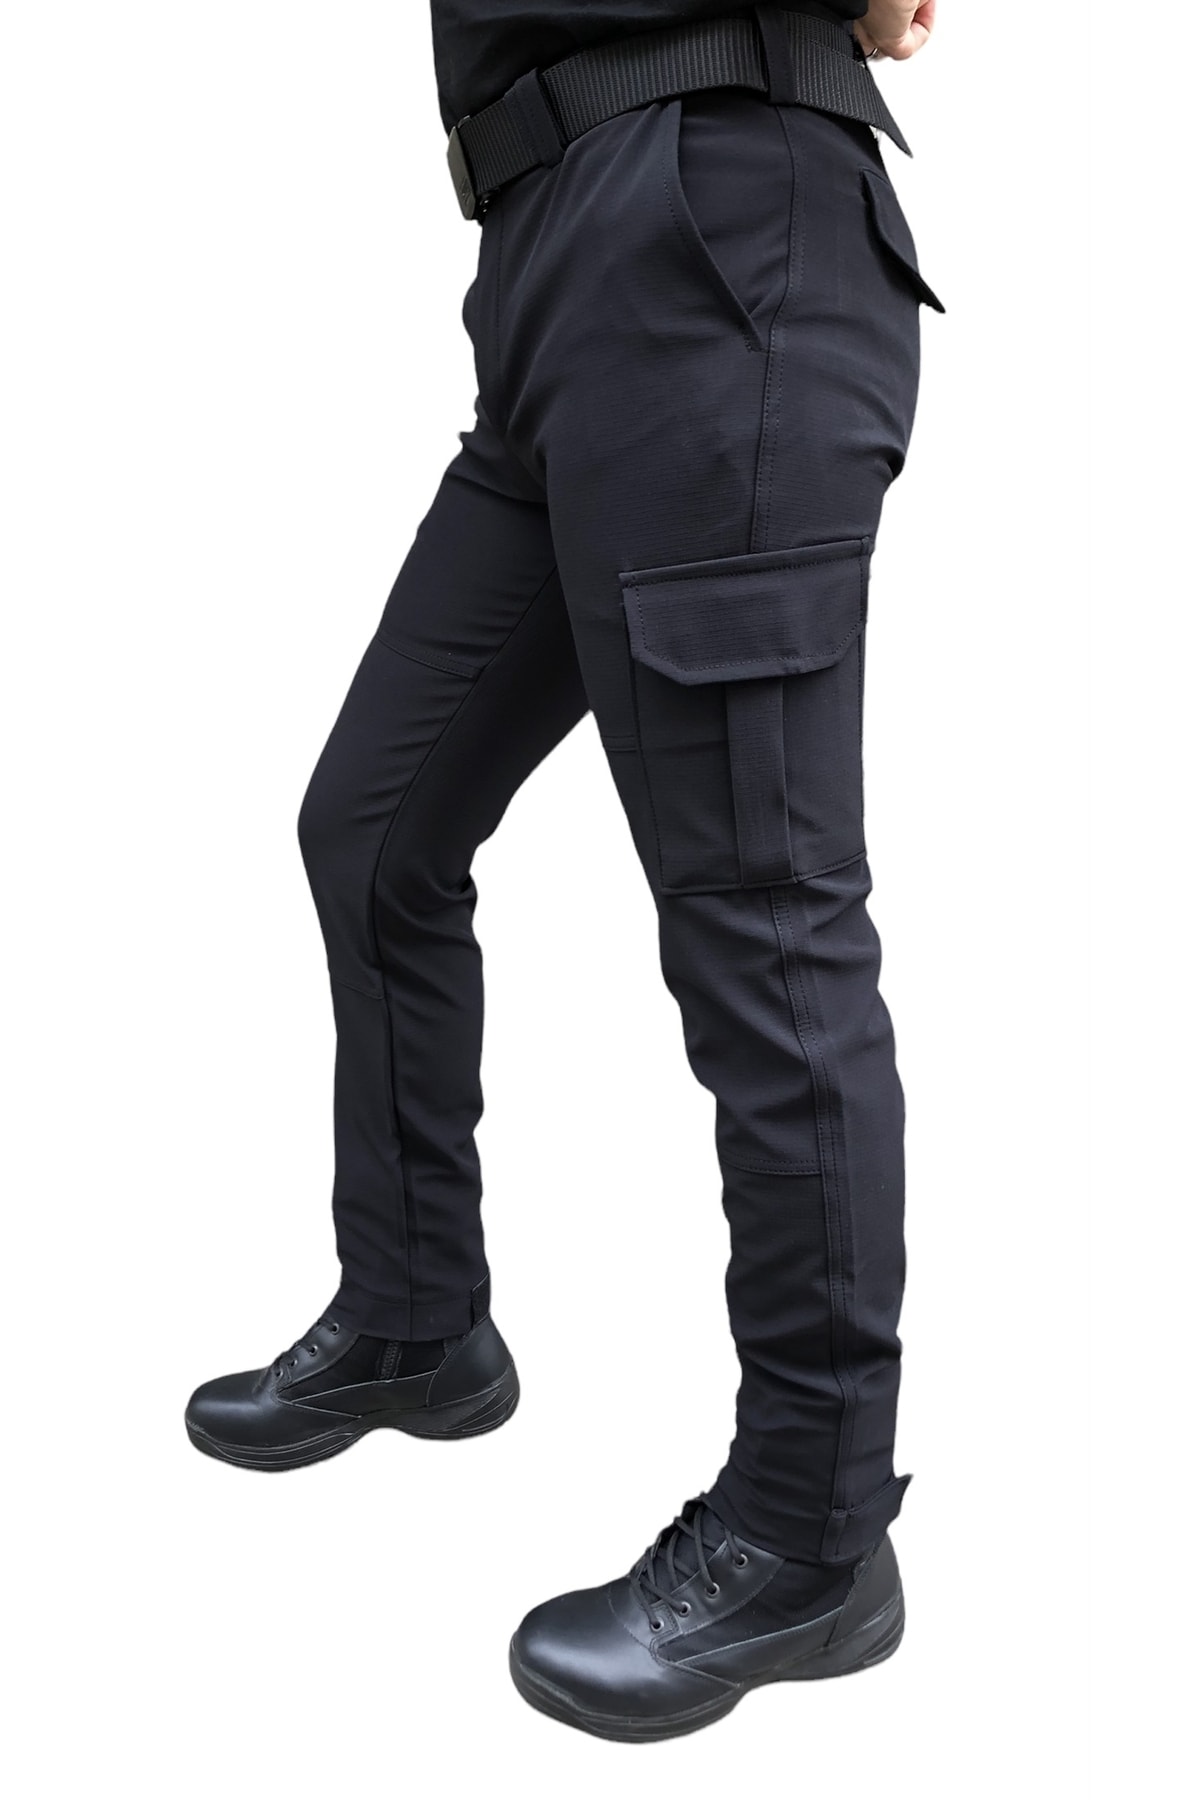 Efsane Siyah Outdoor Tactical Pantolon